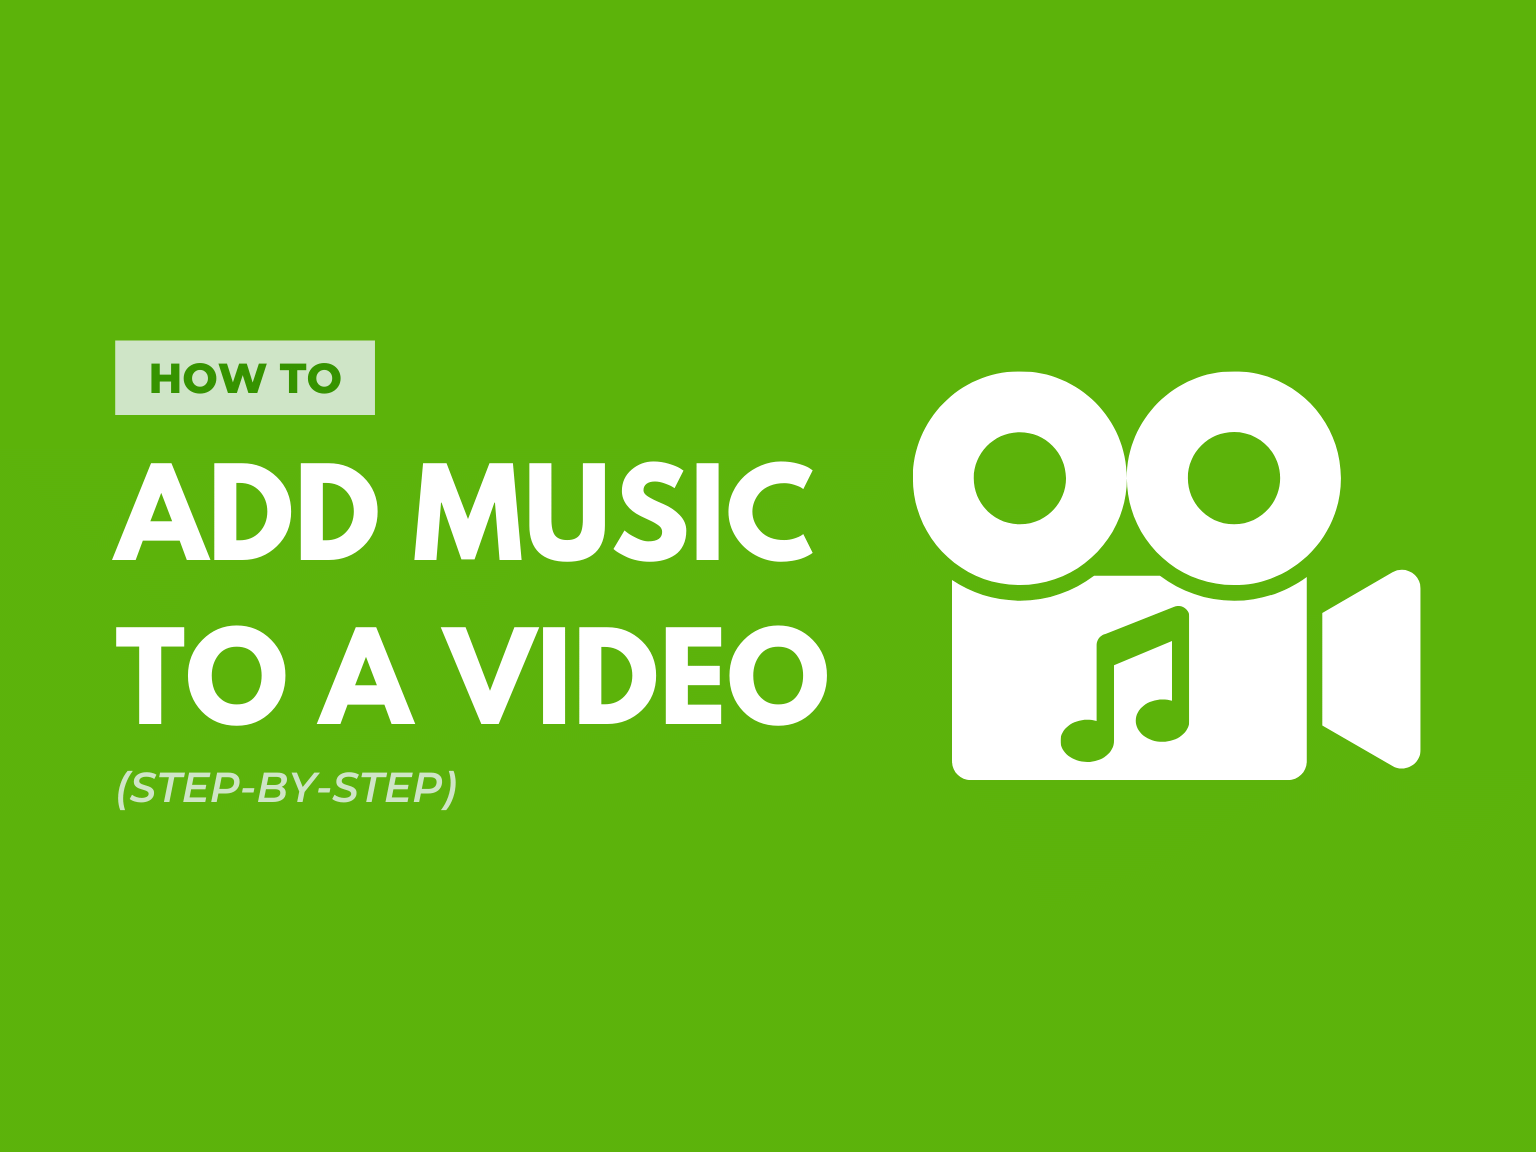 Muốn tạo video với âm nhạc nền đẹp mắt và hấp dẫn? Hãy xem video hướng dẫn thật đơn giản của chúng tôi để thêm nhạc vào video đó nhé. Sẽ không còn bất kỳ video nào nhạt nhòa thêm nữa!